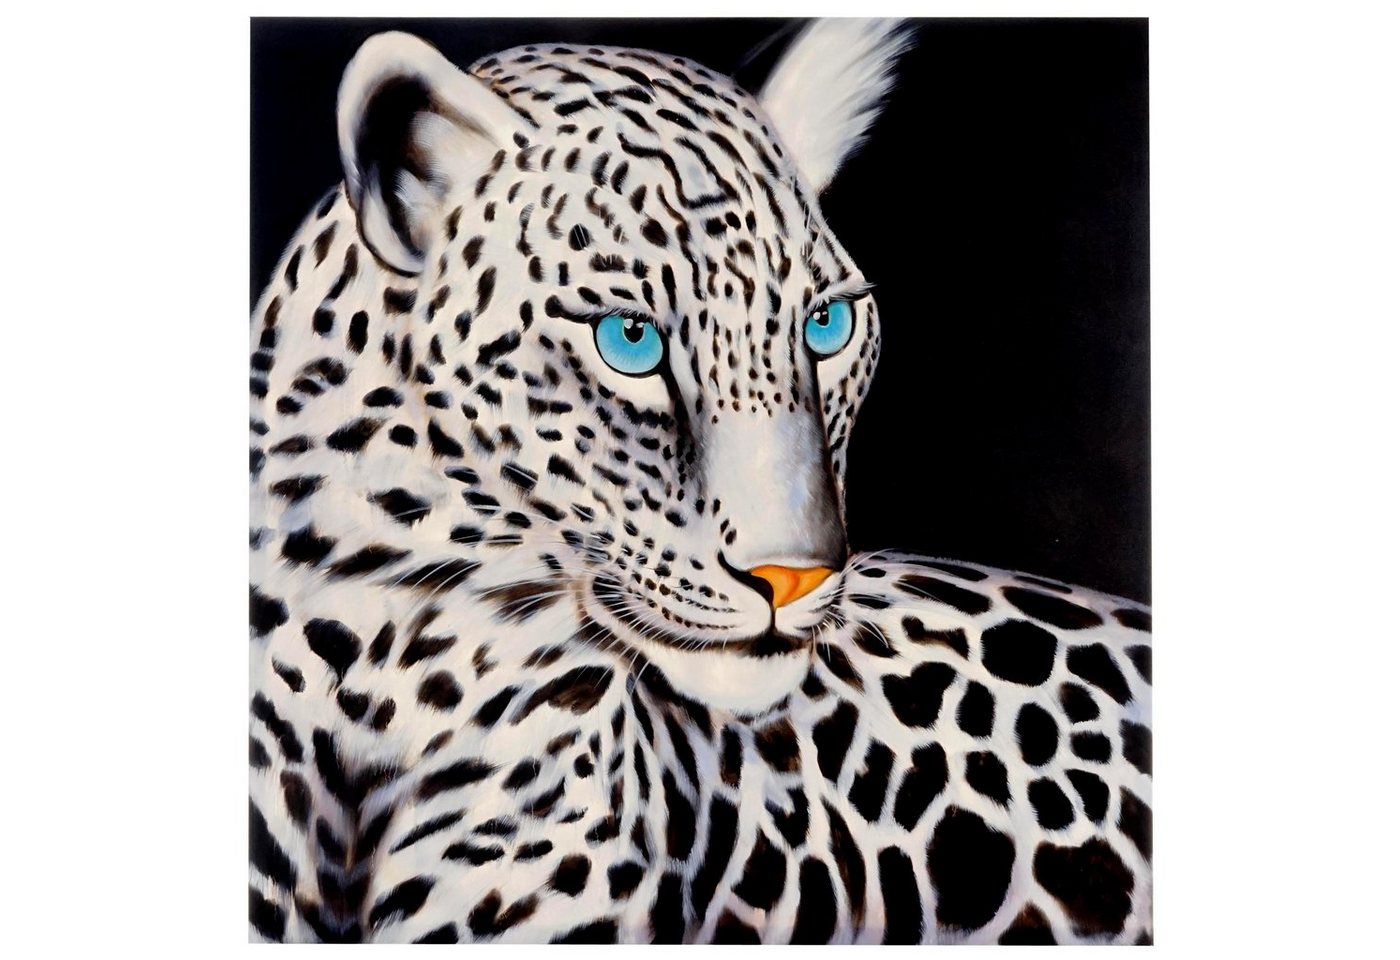 MCW Ölgemälde Wandbild Wei?er Leopard, Weißer Leopard, Handgemalt, Hohe Qualität, Jedes Bild ein Unikat, Ölfarben von MCW